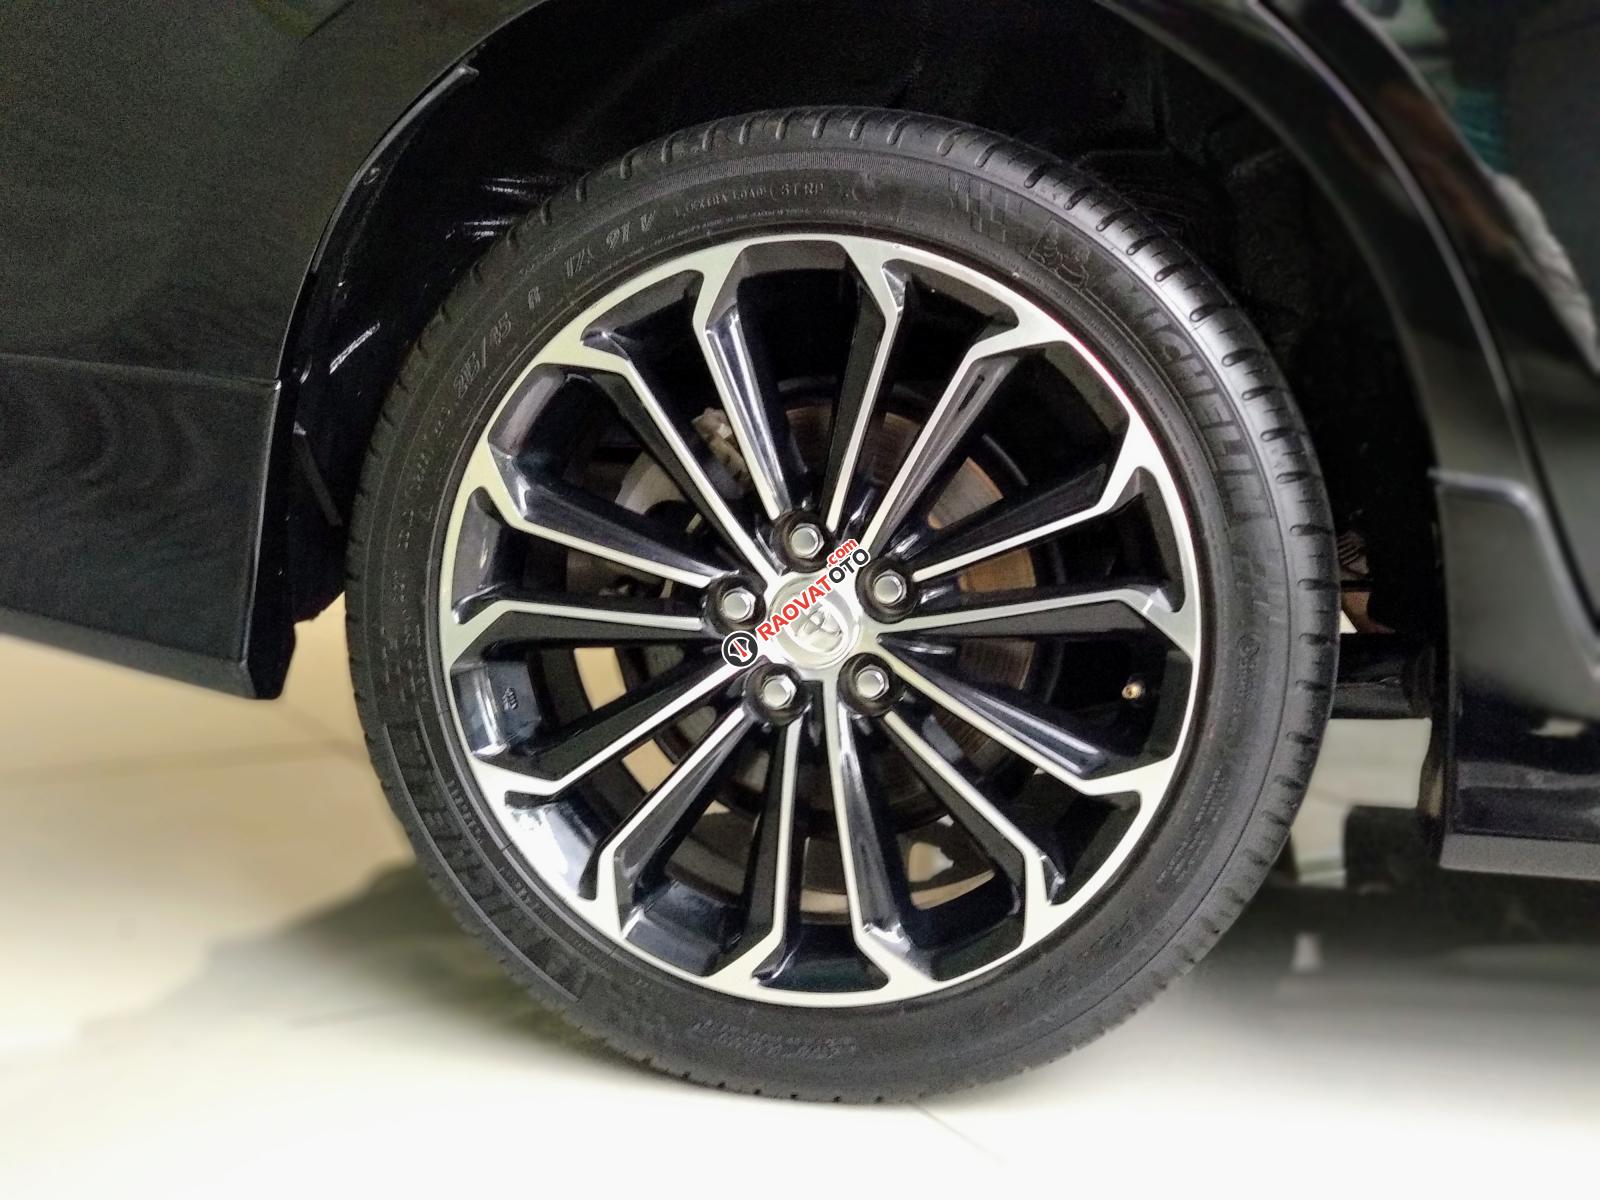 Bán Toyota Corolla Altis 2.0V đời 2016, màu đen, ưu đãi giá tốt hơn cho khách nào đến xem xe trực tiếp-4